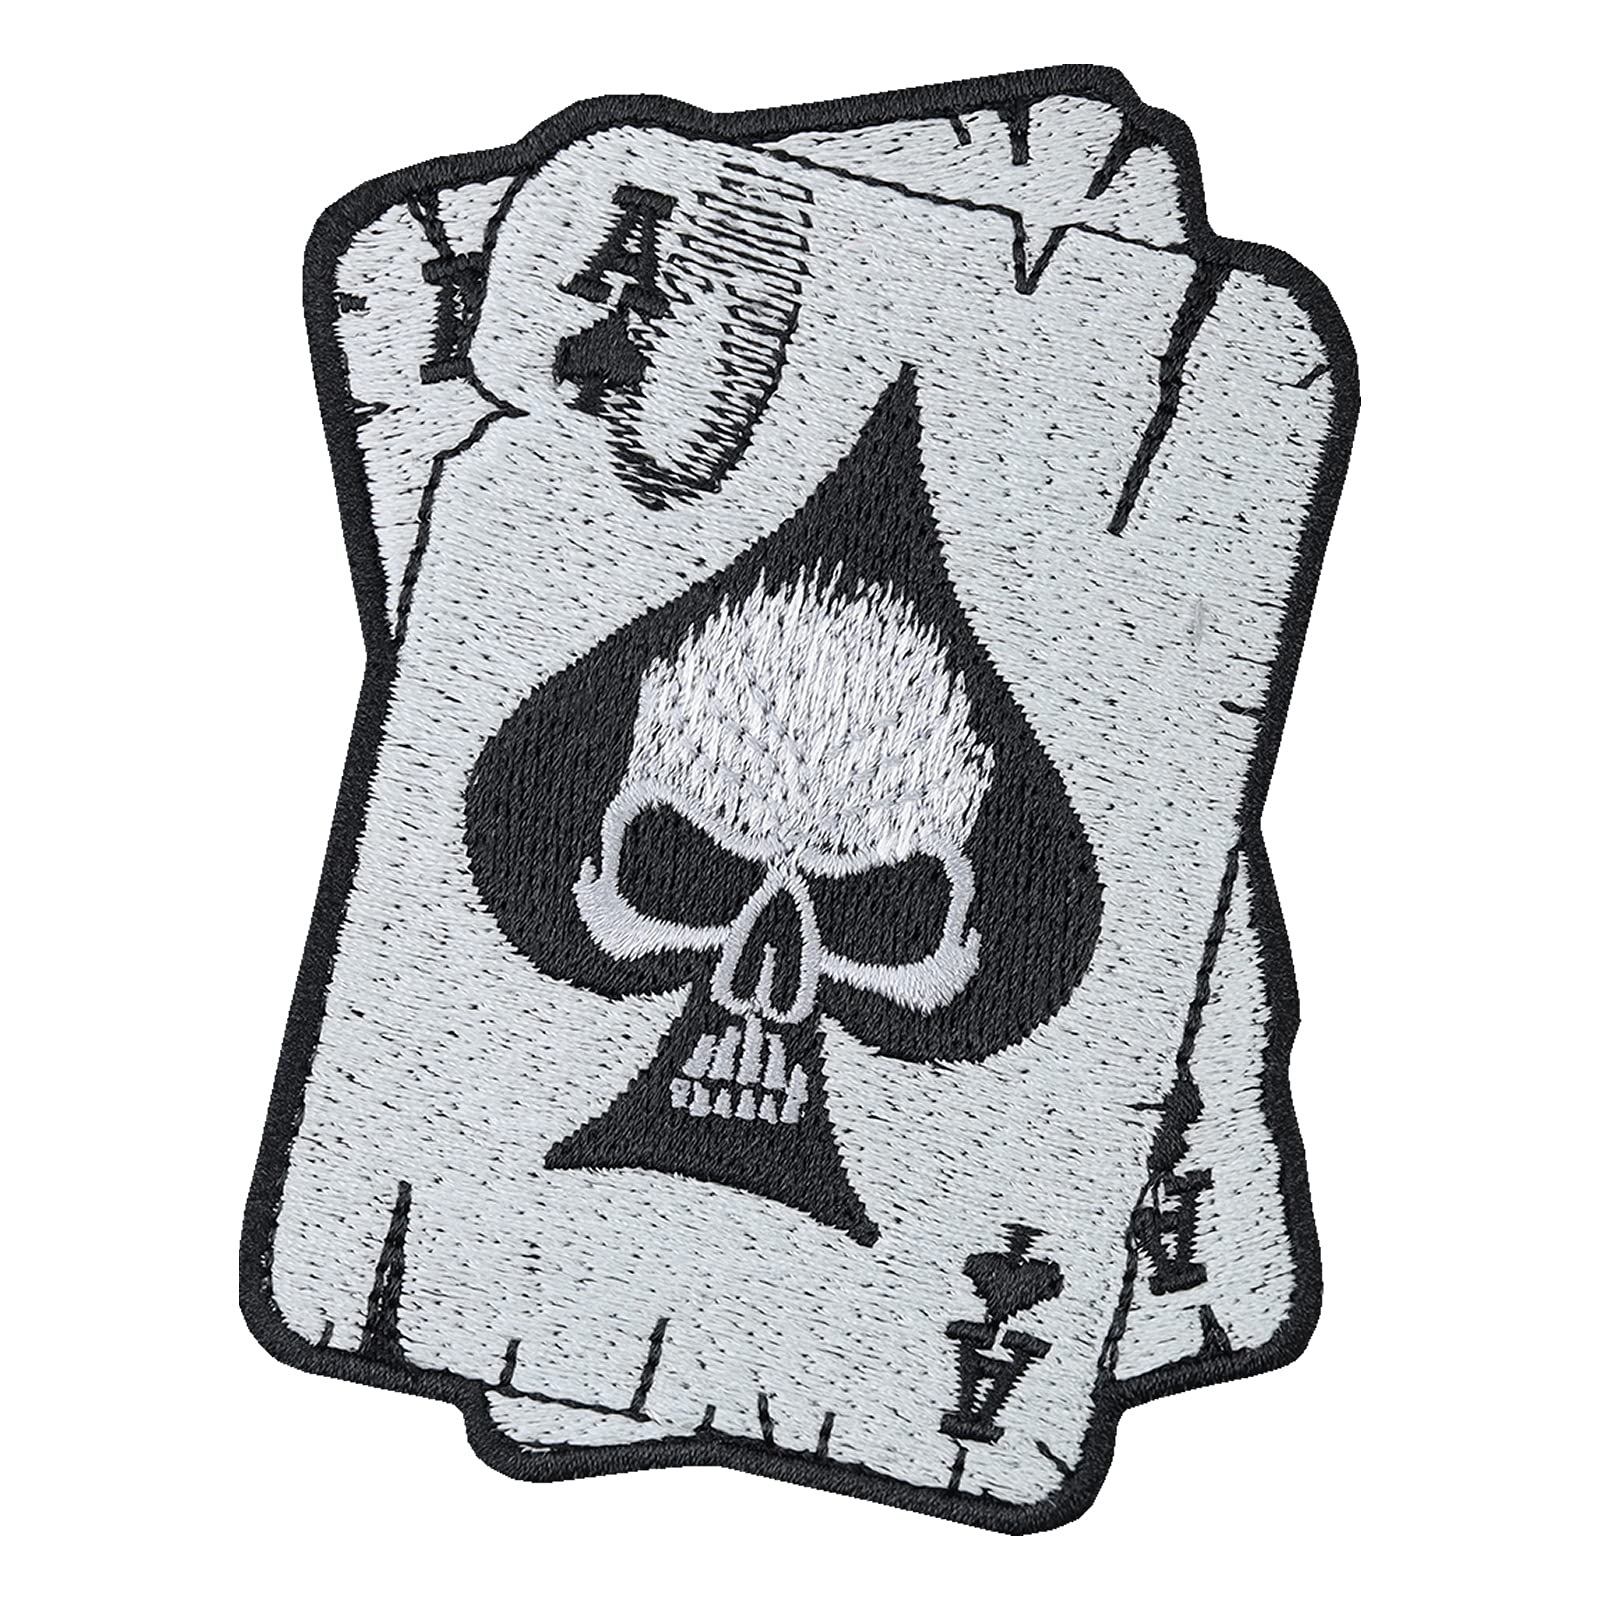 Biker Patch: Pokerkarten - Heavy Metal Aufnäher Totenkopf Bestickt - Rocker Geschenk - 2 Aces Aufbügler Motorrad Applikation für Shirt/Jacke/Weste/Kutten - 90x70mm von PATCH KING